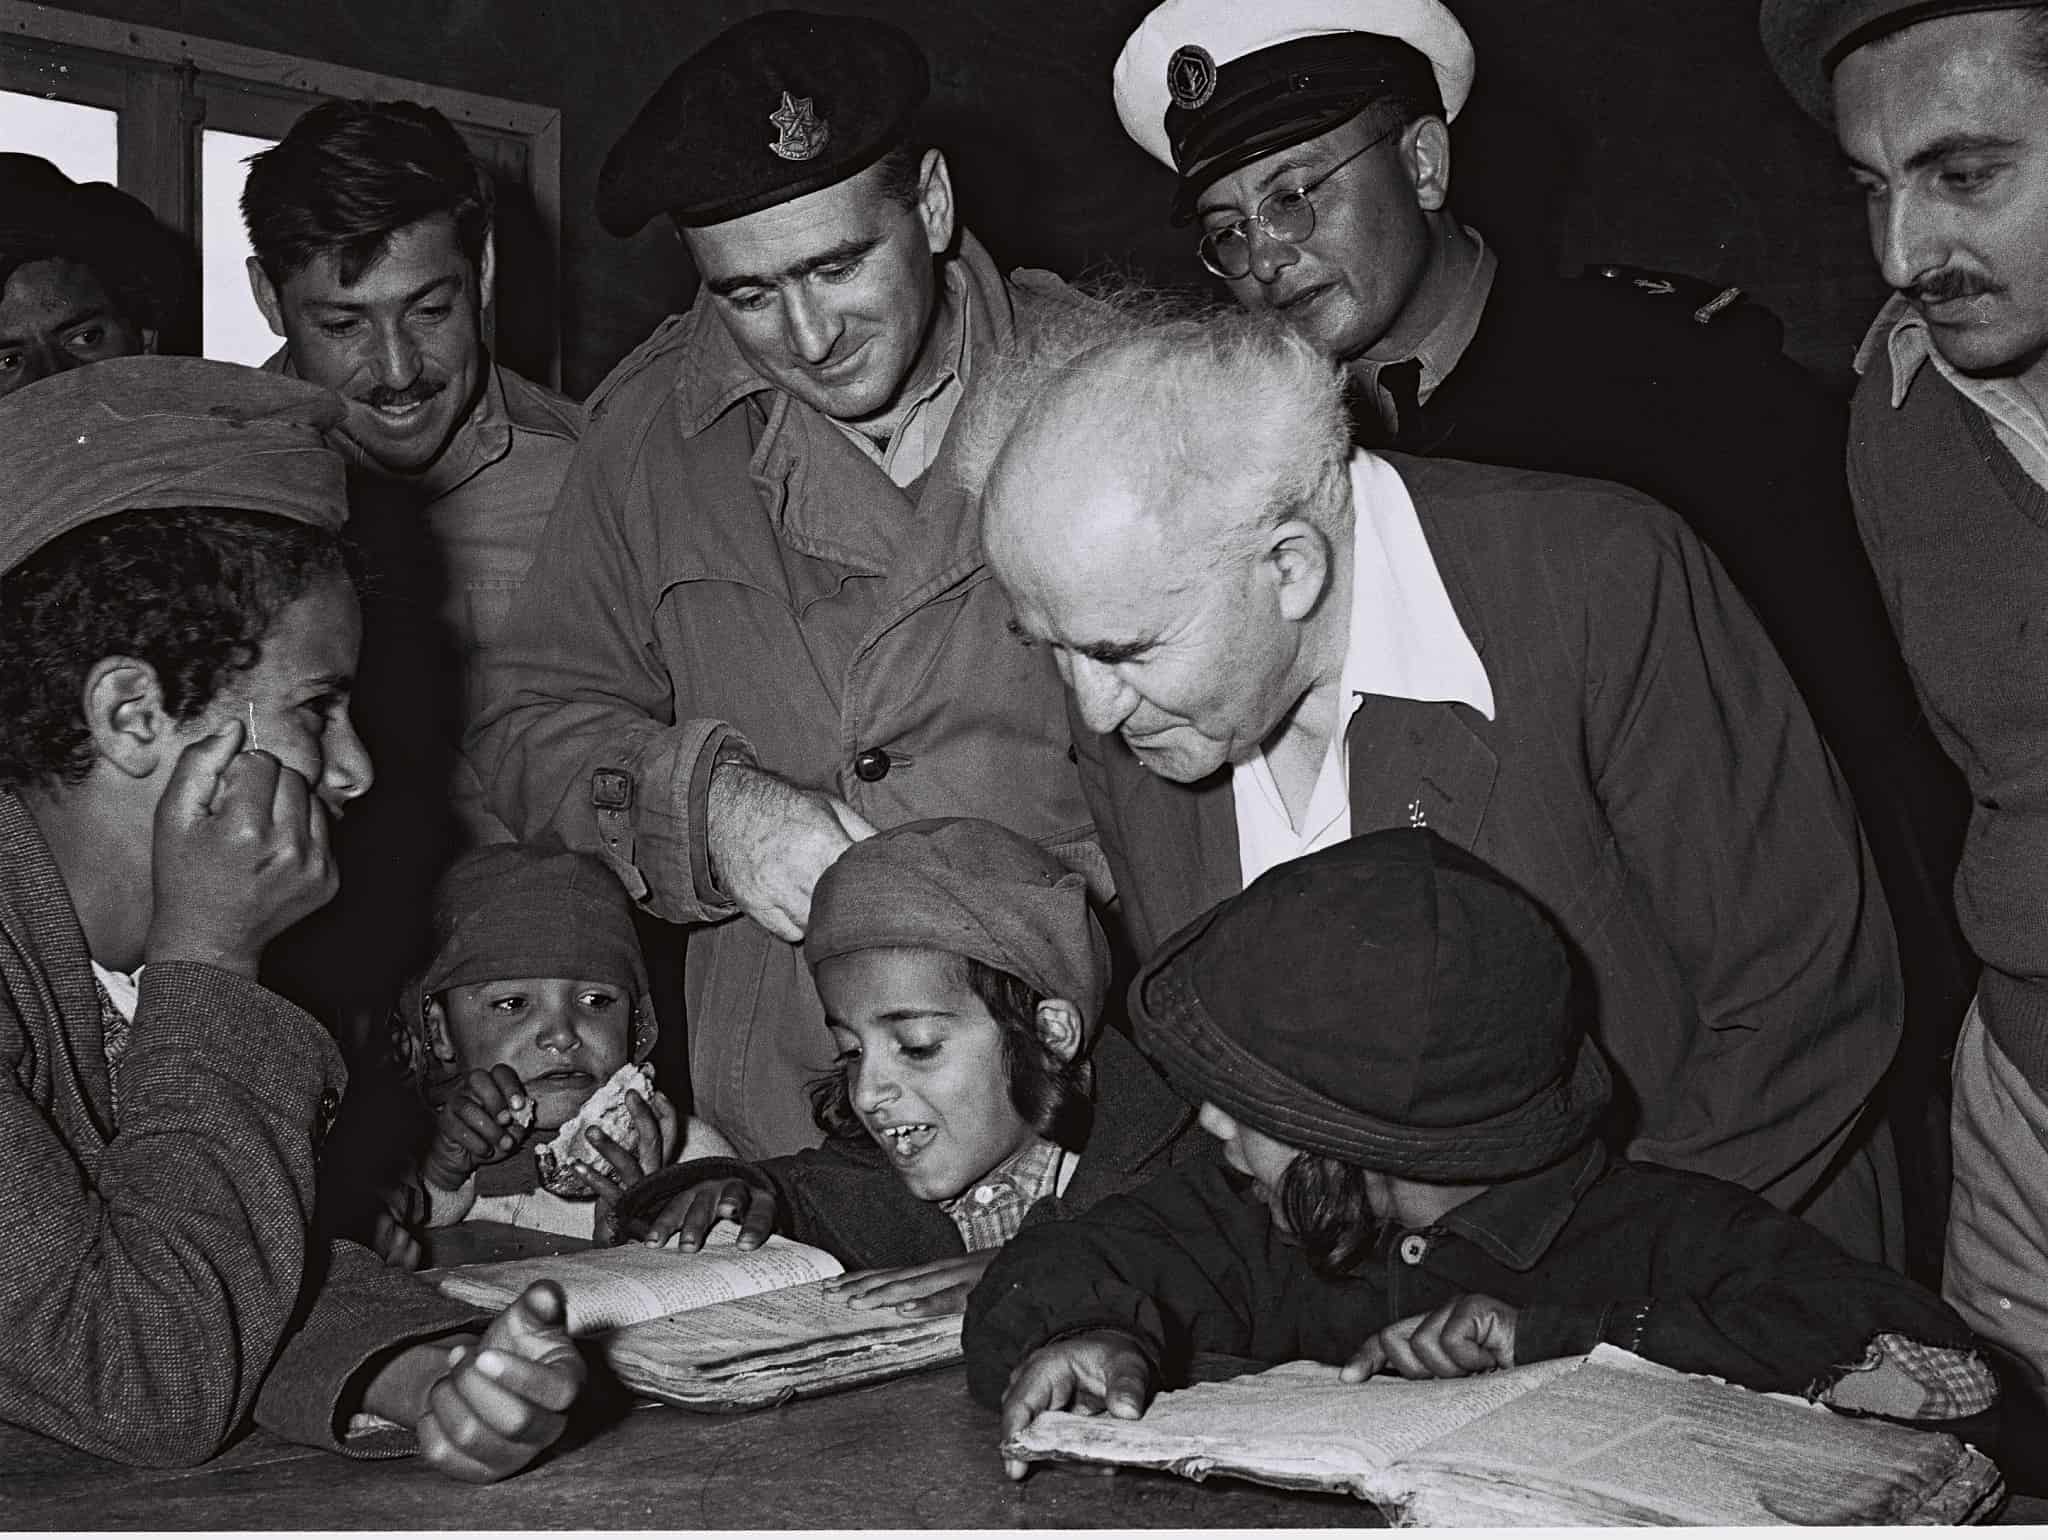 דוד בן-גוריון מבקר במעברת פרדיה, ב-22 בנובמבר 1950 (צילום: דוד אלדן/אוסף התצלומים הלאומי)